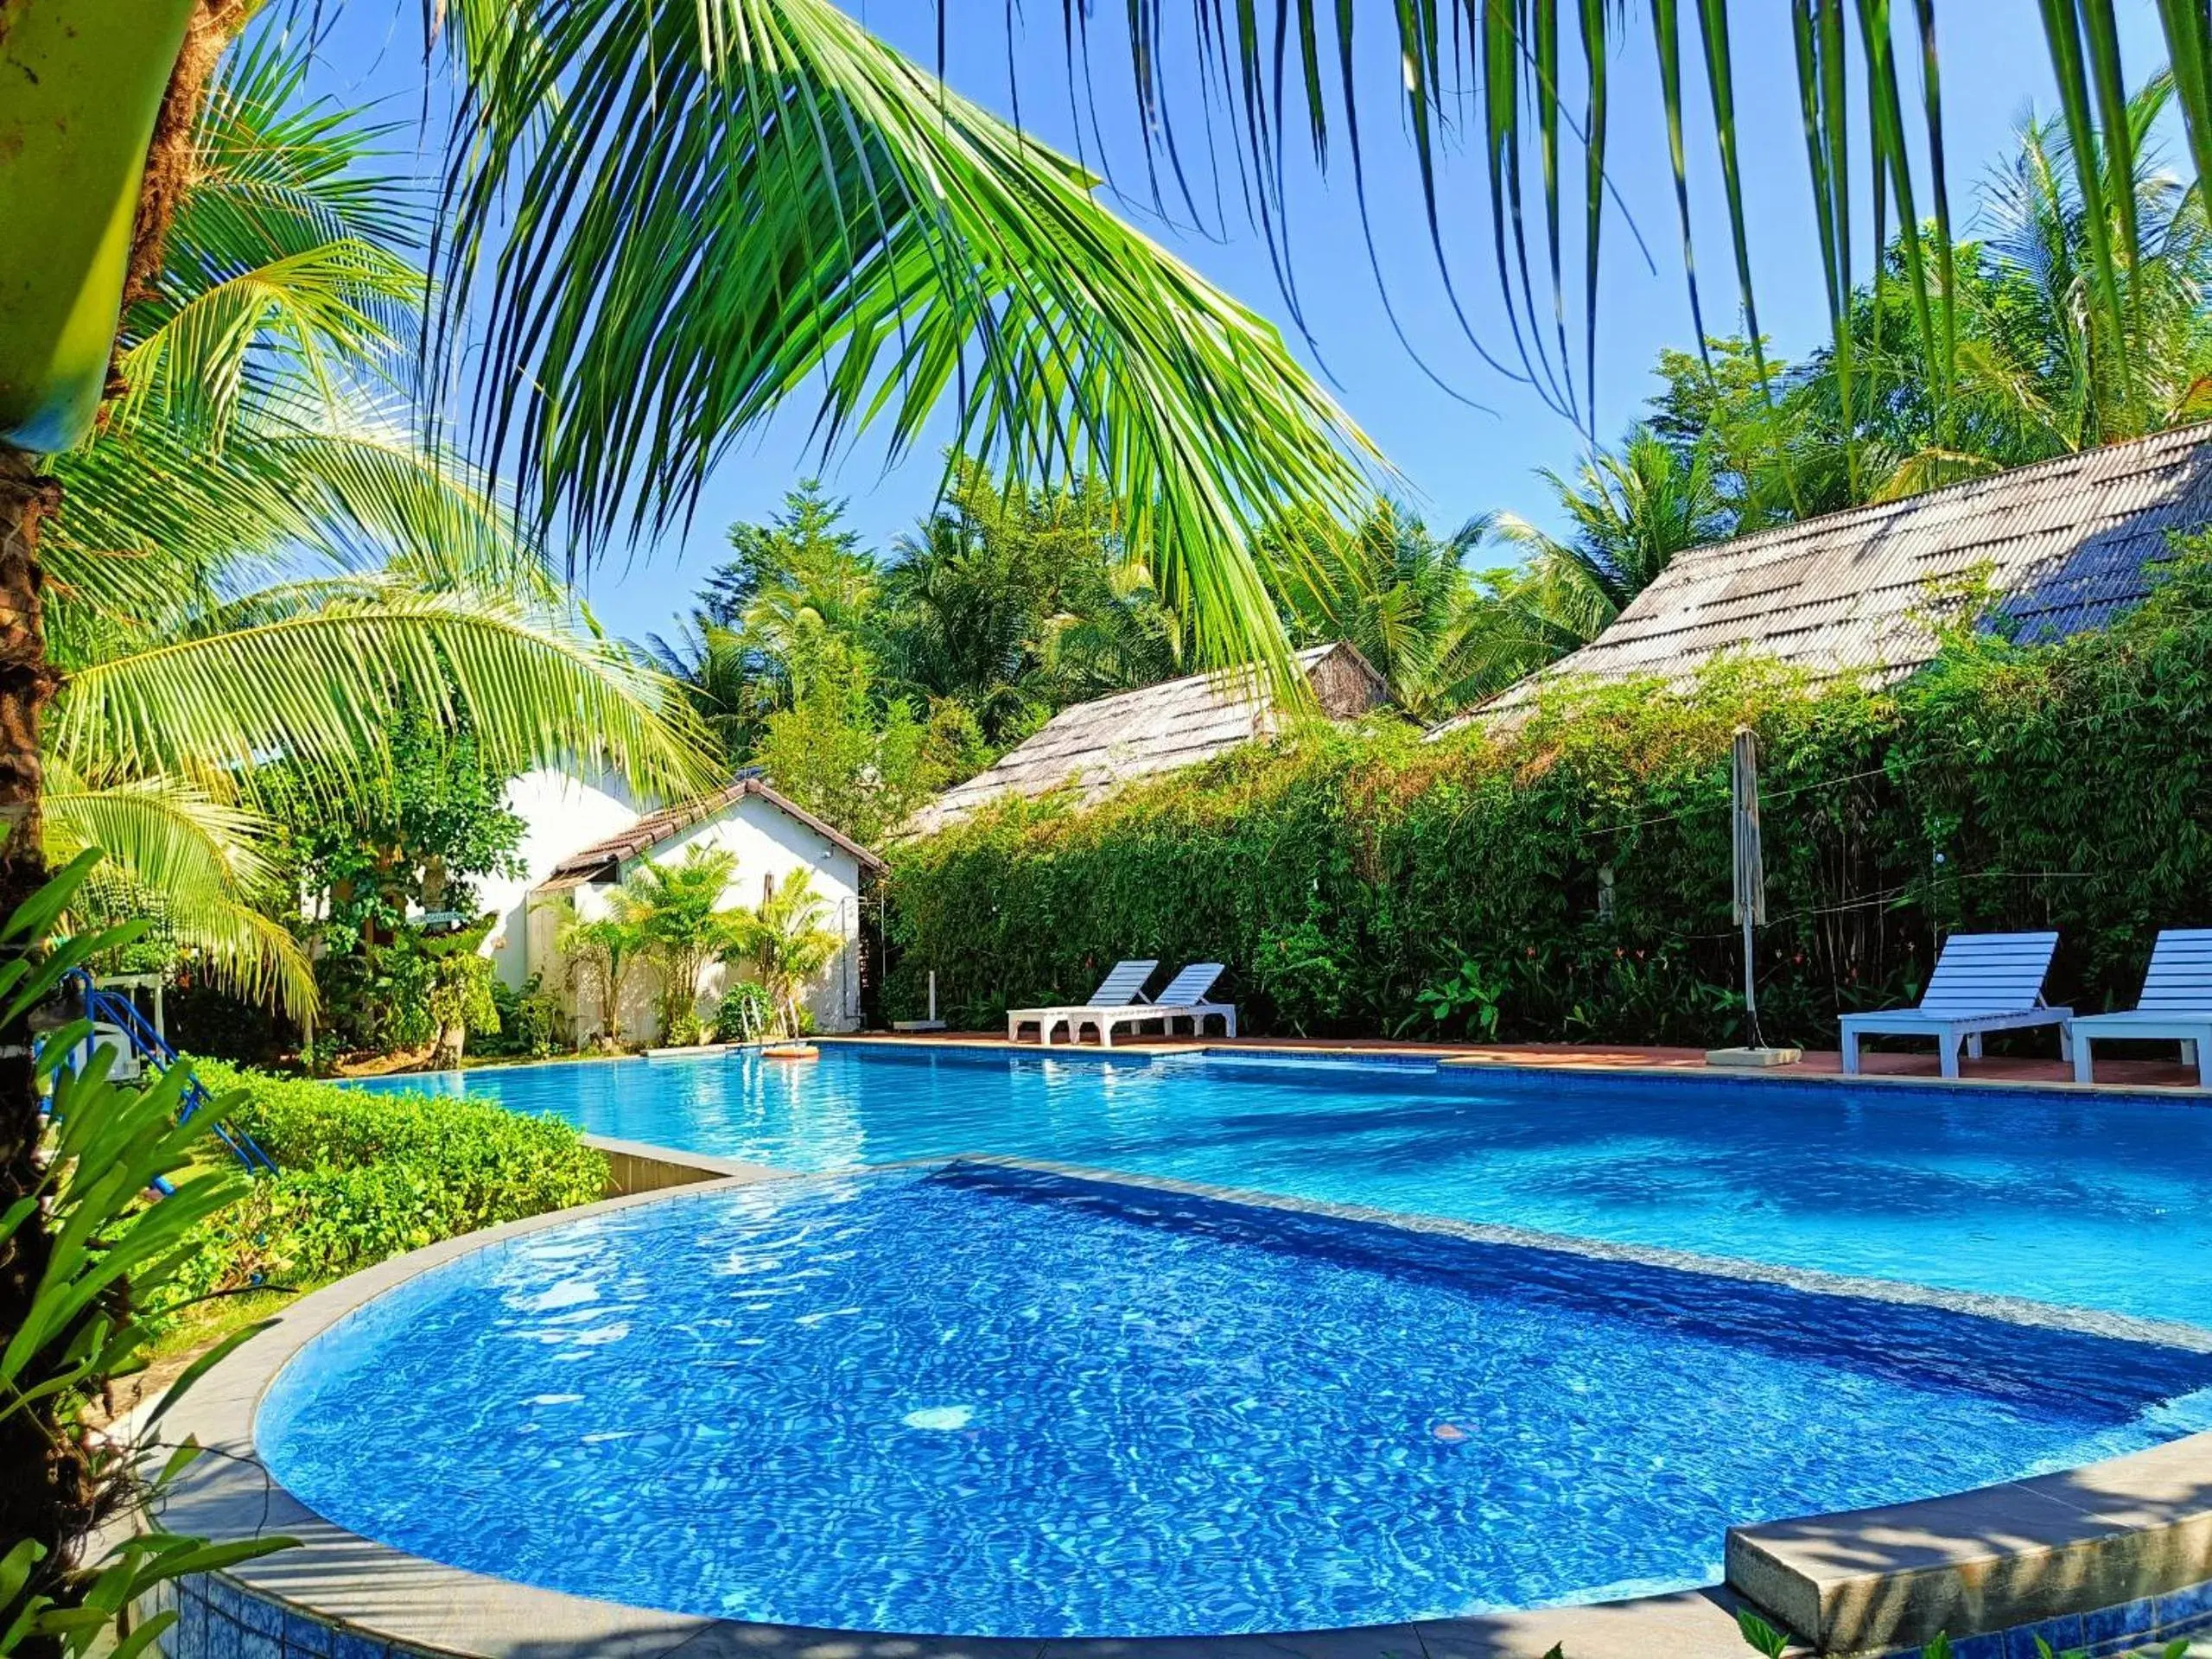 Swimming Pool in La Casa Resort